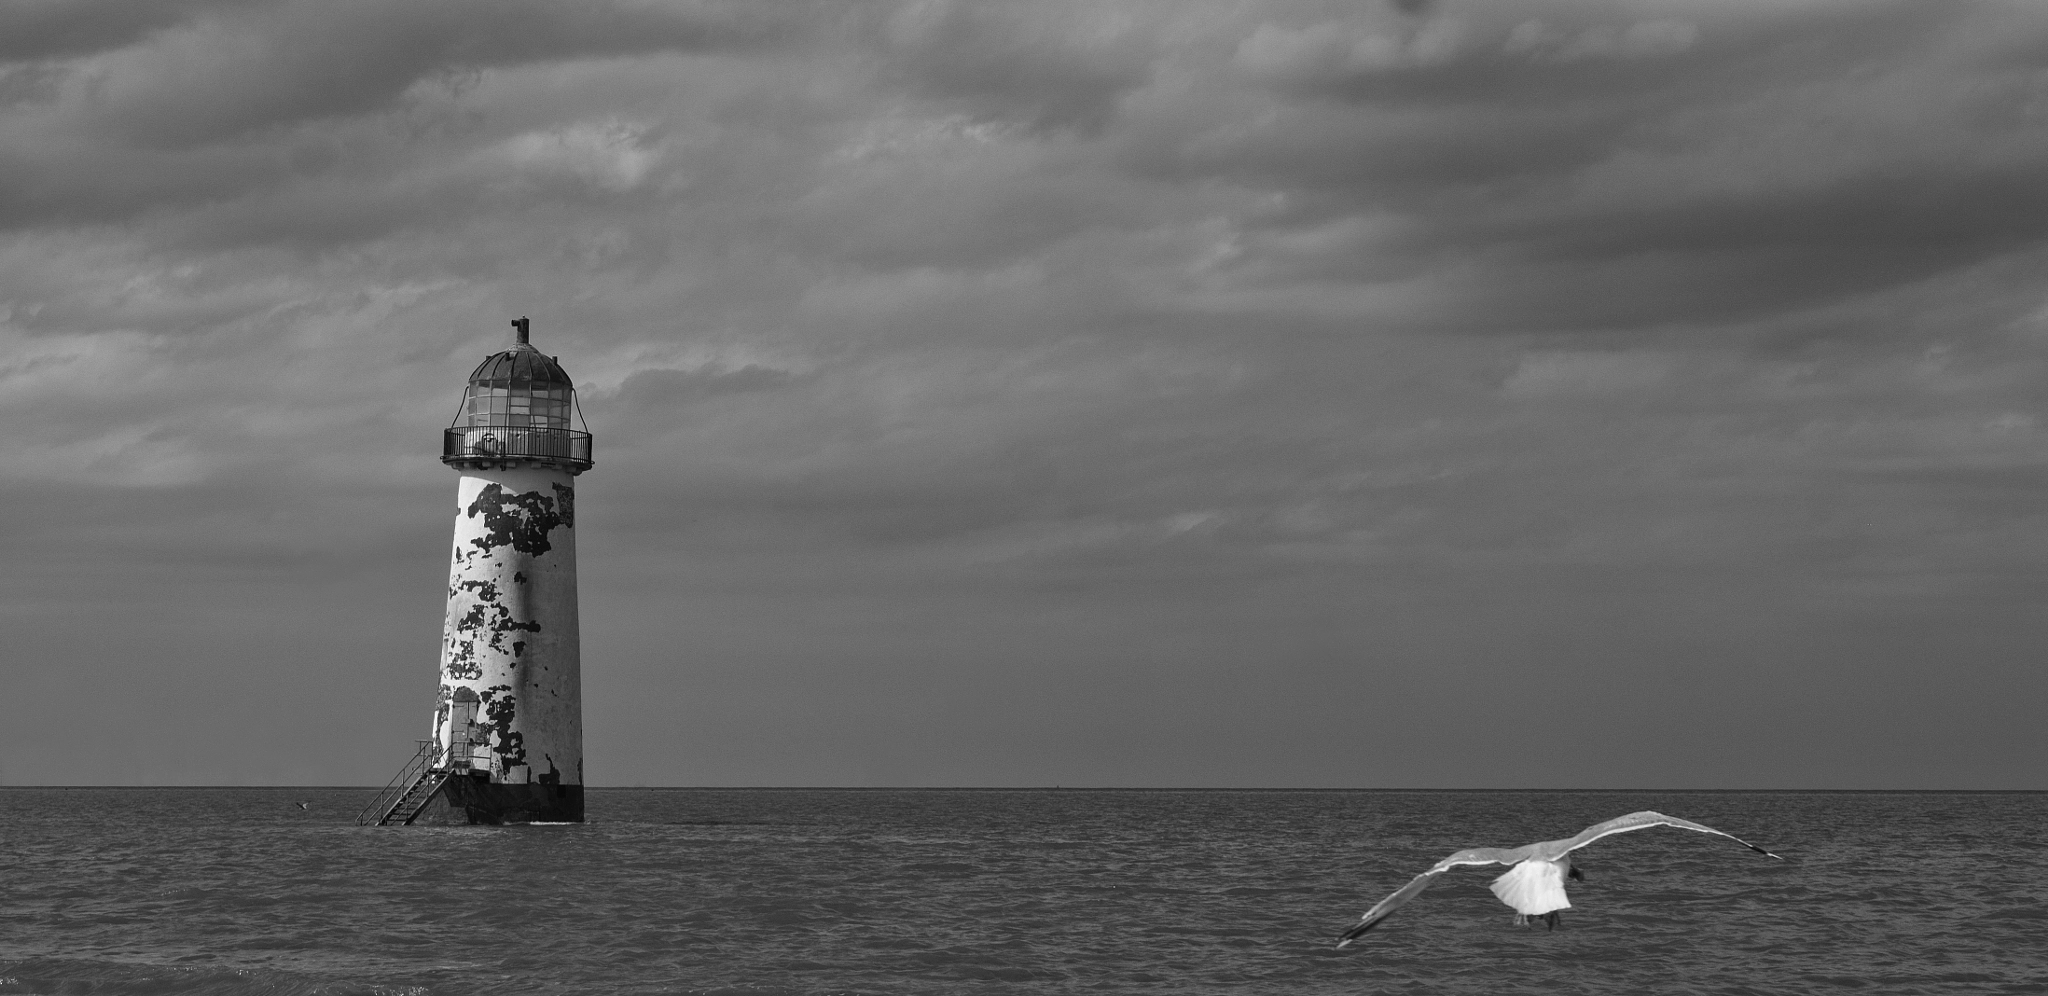 Sony Alpha NEX-C3 sample photo. Lighthouse & seagull photography